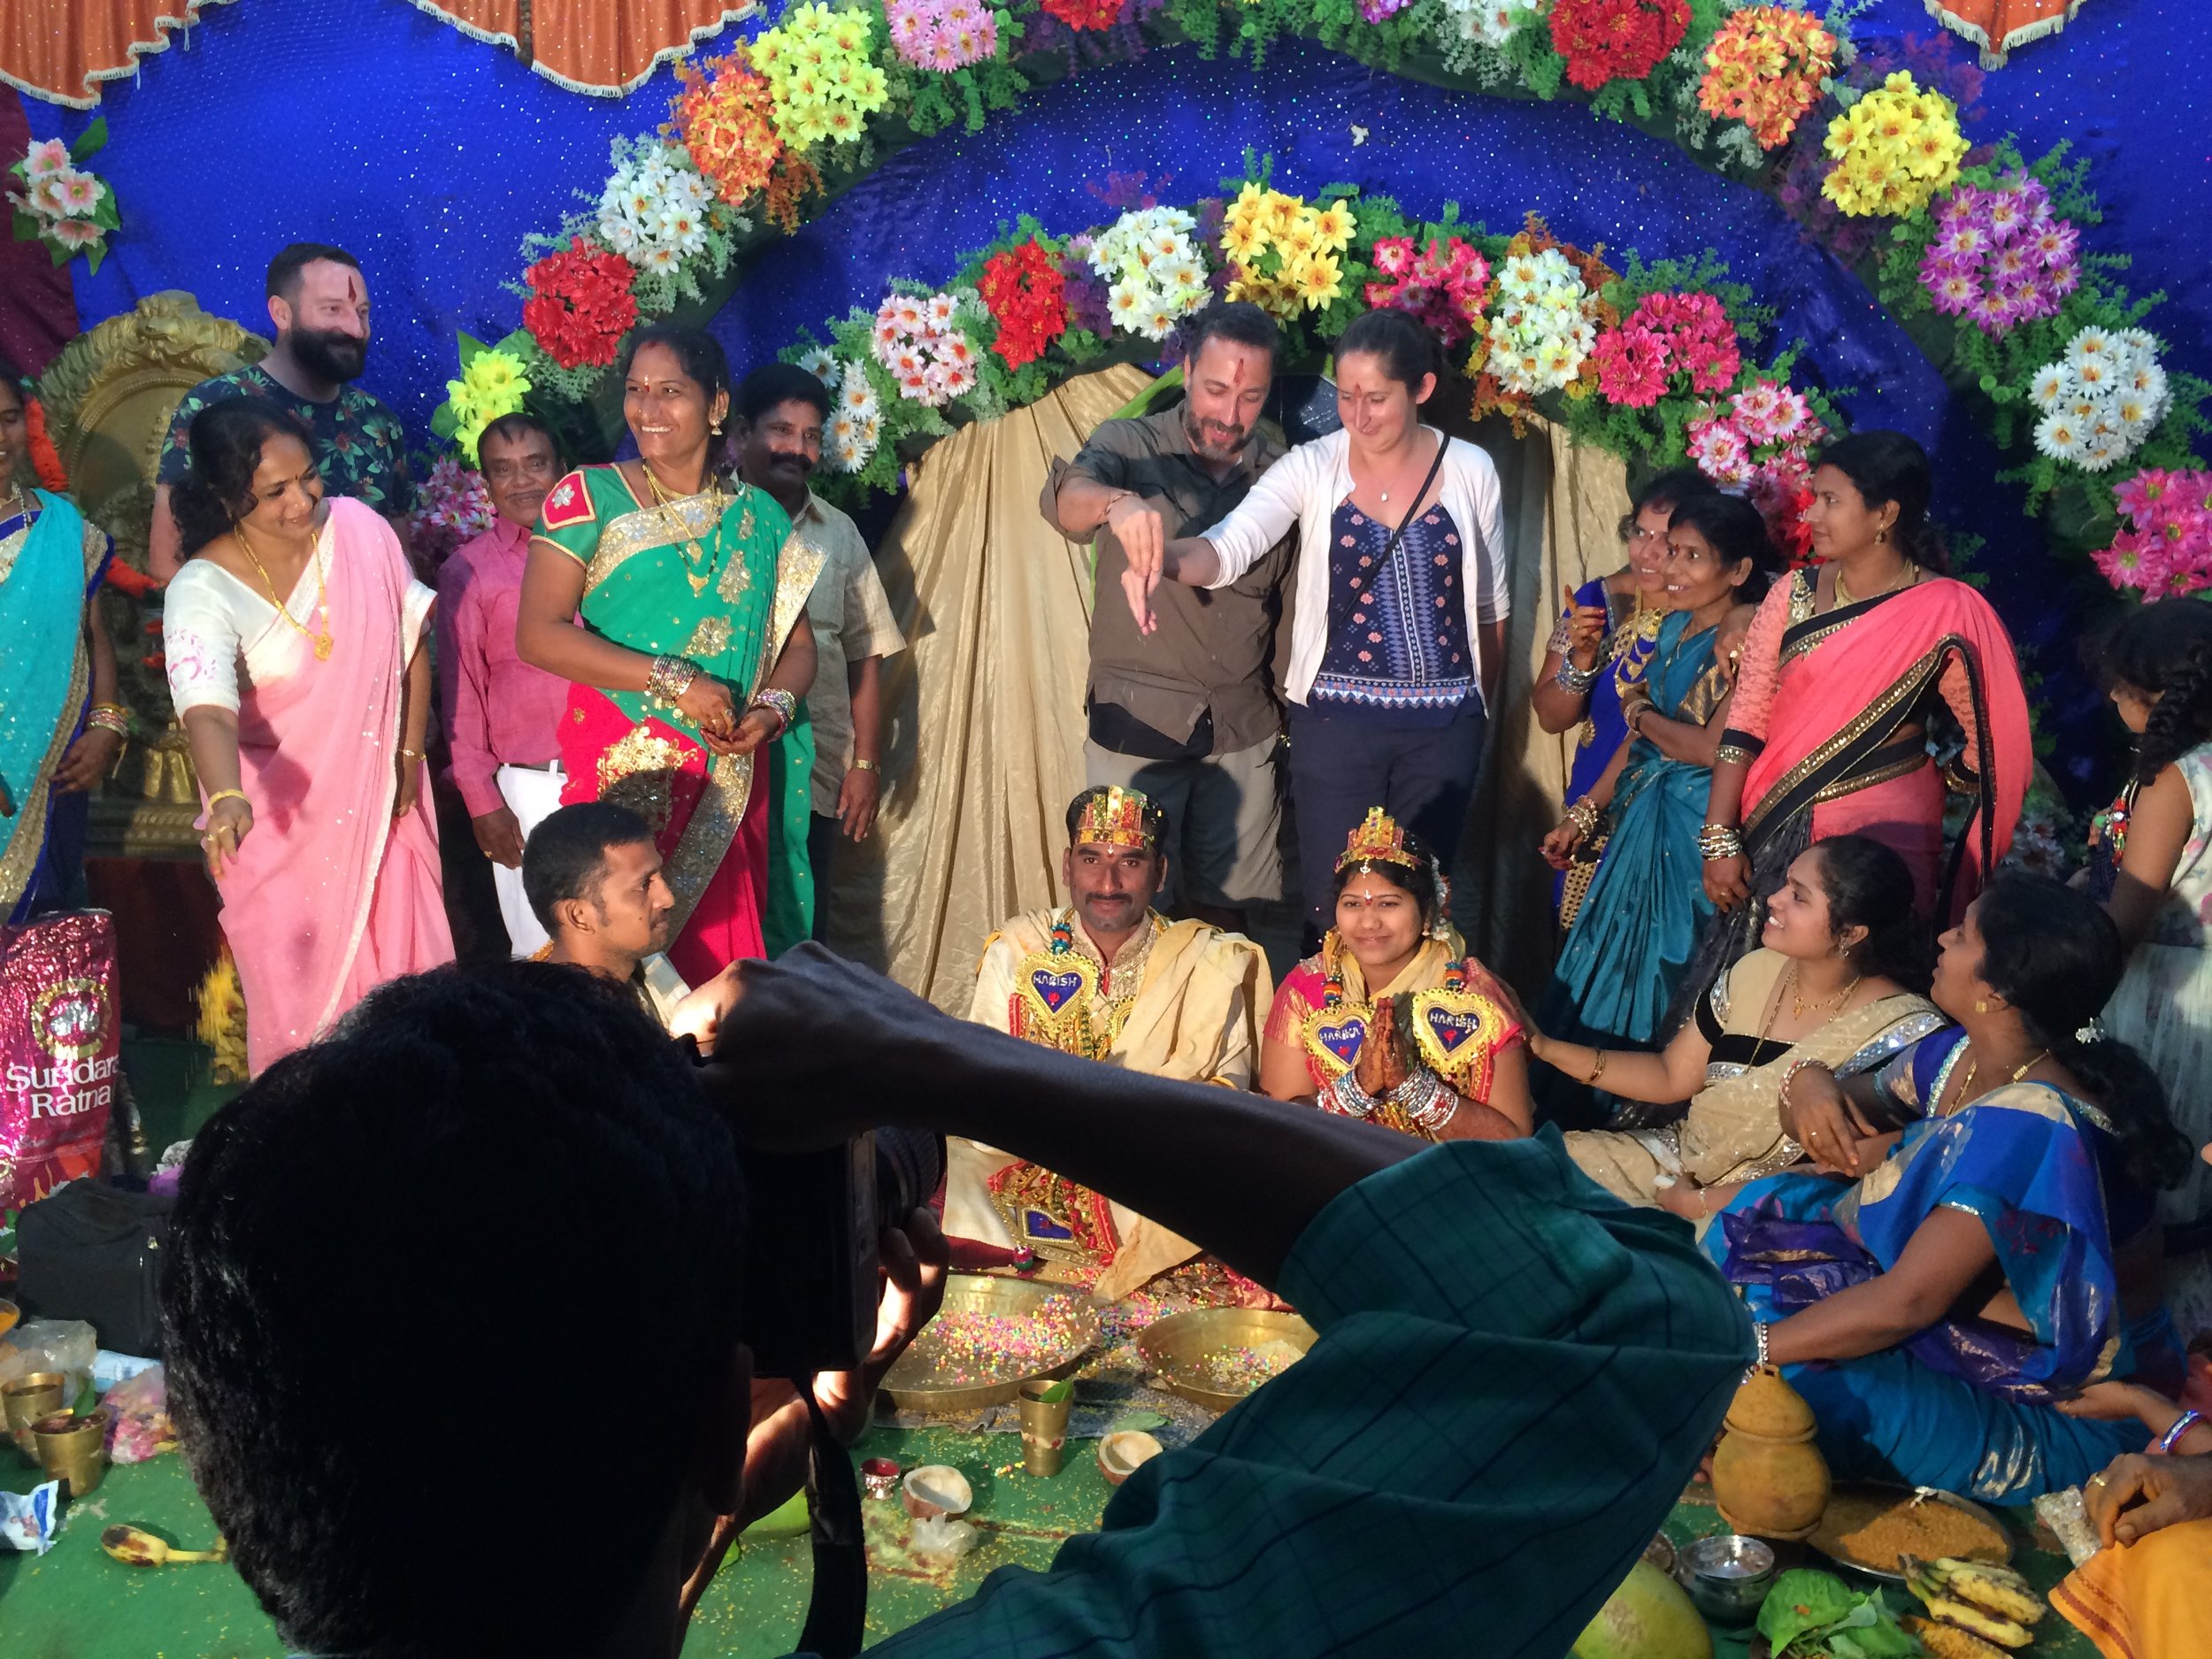 Crashing an Indian wedding